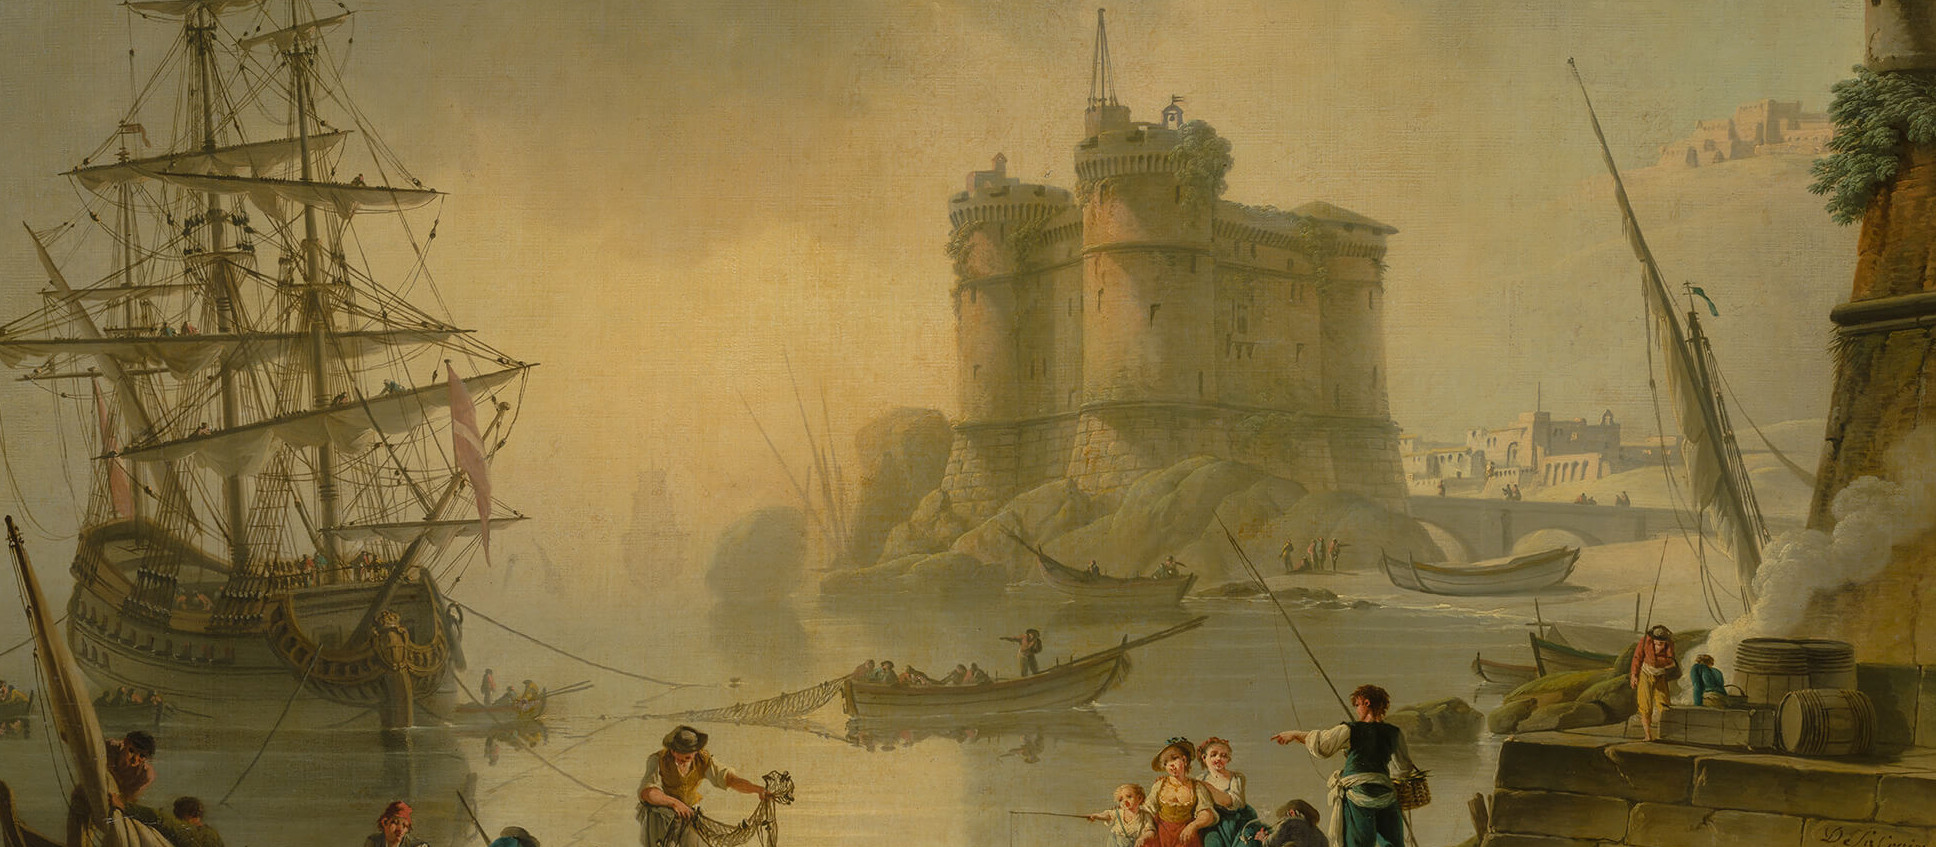 Пейзажи Шарля Франсуа Гренье де Лакруа и ученики ландшафтного класса Императорской Академии художеств. От копии к оригиналу